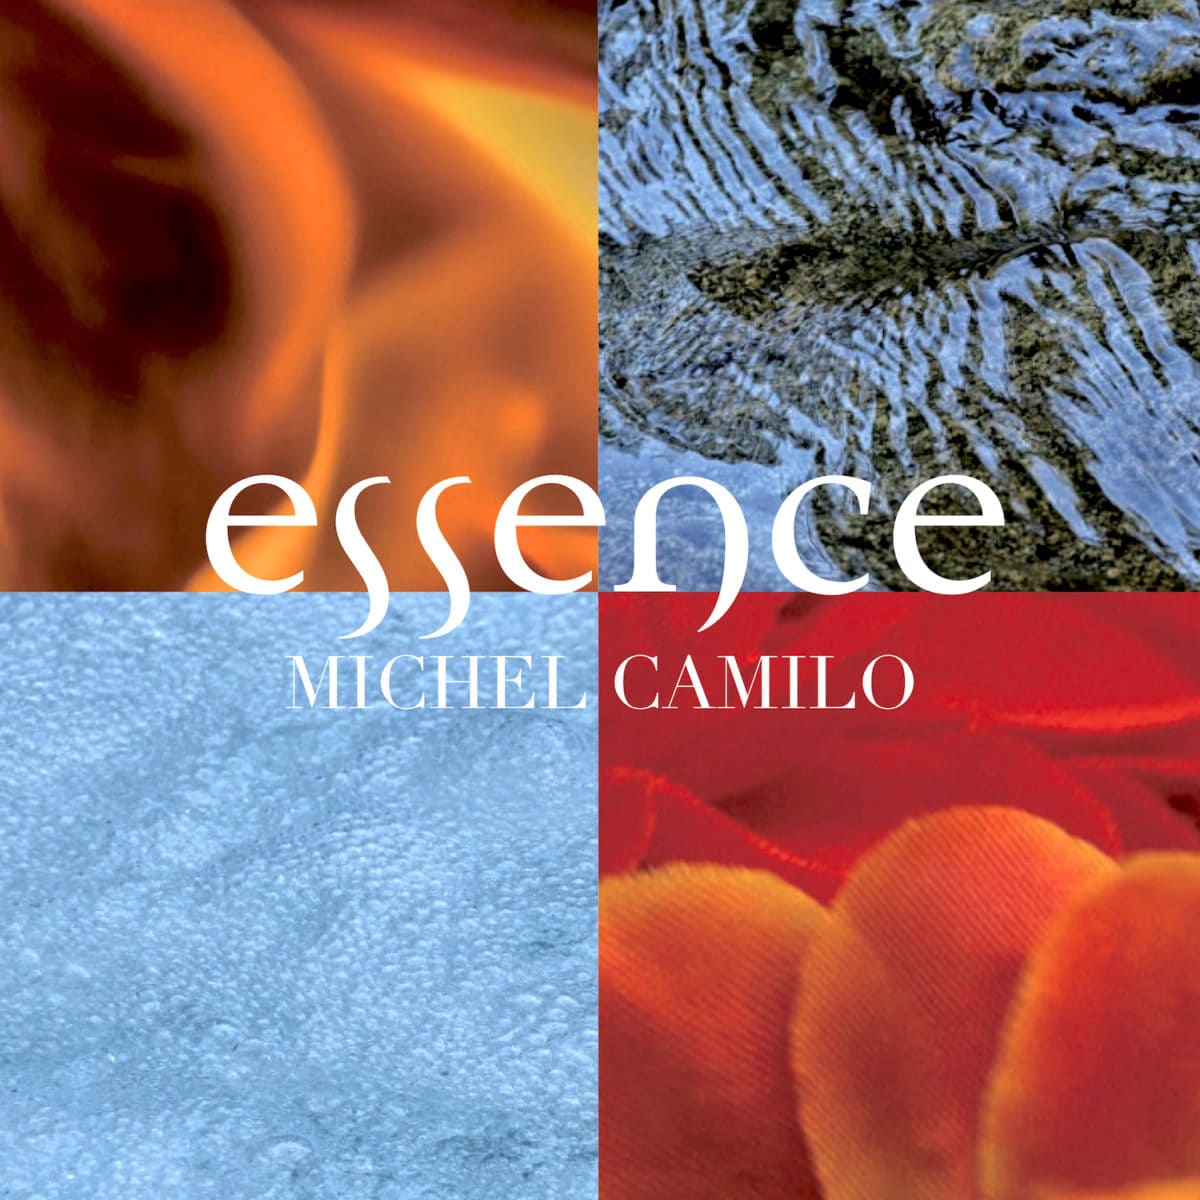 Michel Camilo - Essence_cover copy